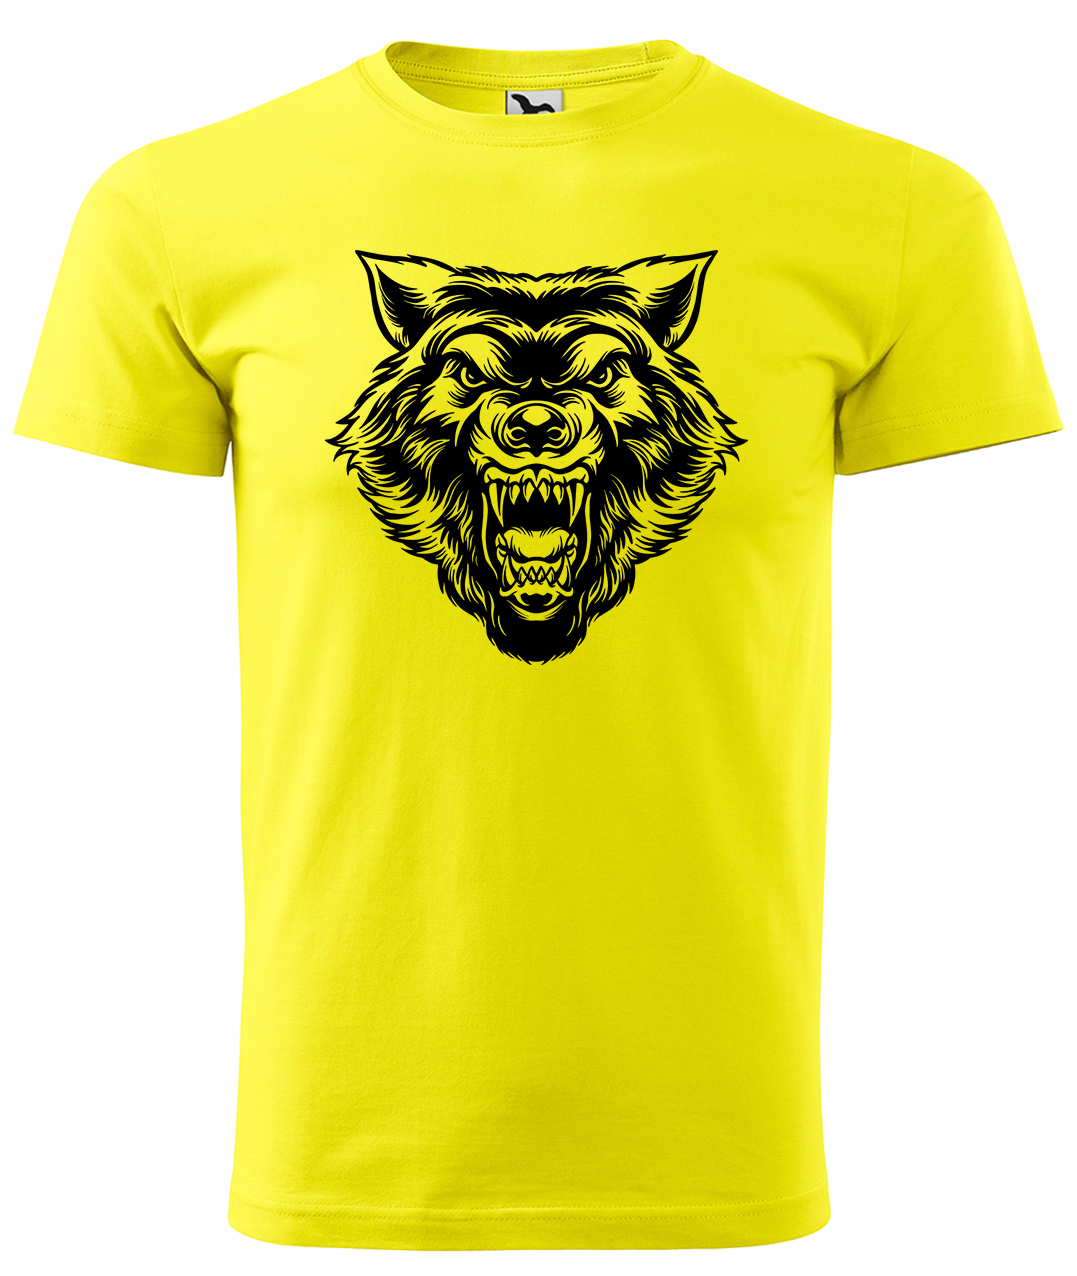 Dětské tričko s vlkem - Rozzuřený vlk Velikost: 4 roky / 110 cm, Barva: Žlutá (04), Délka rukávu: Krátký rukáv